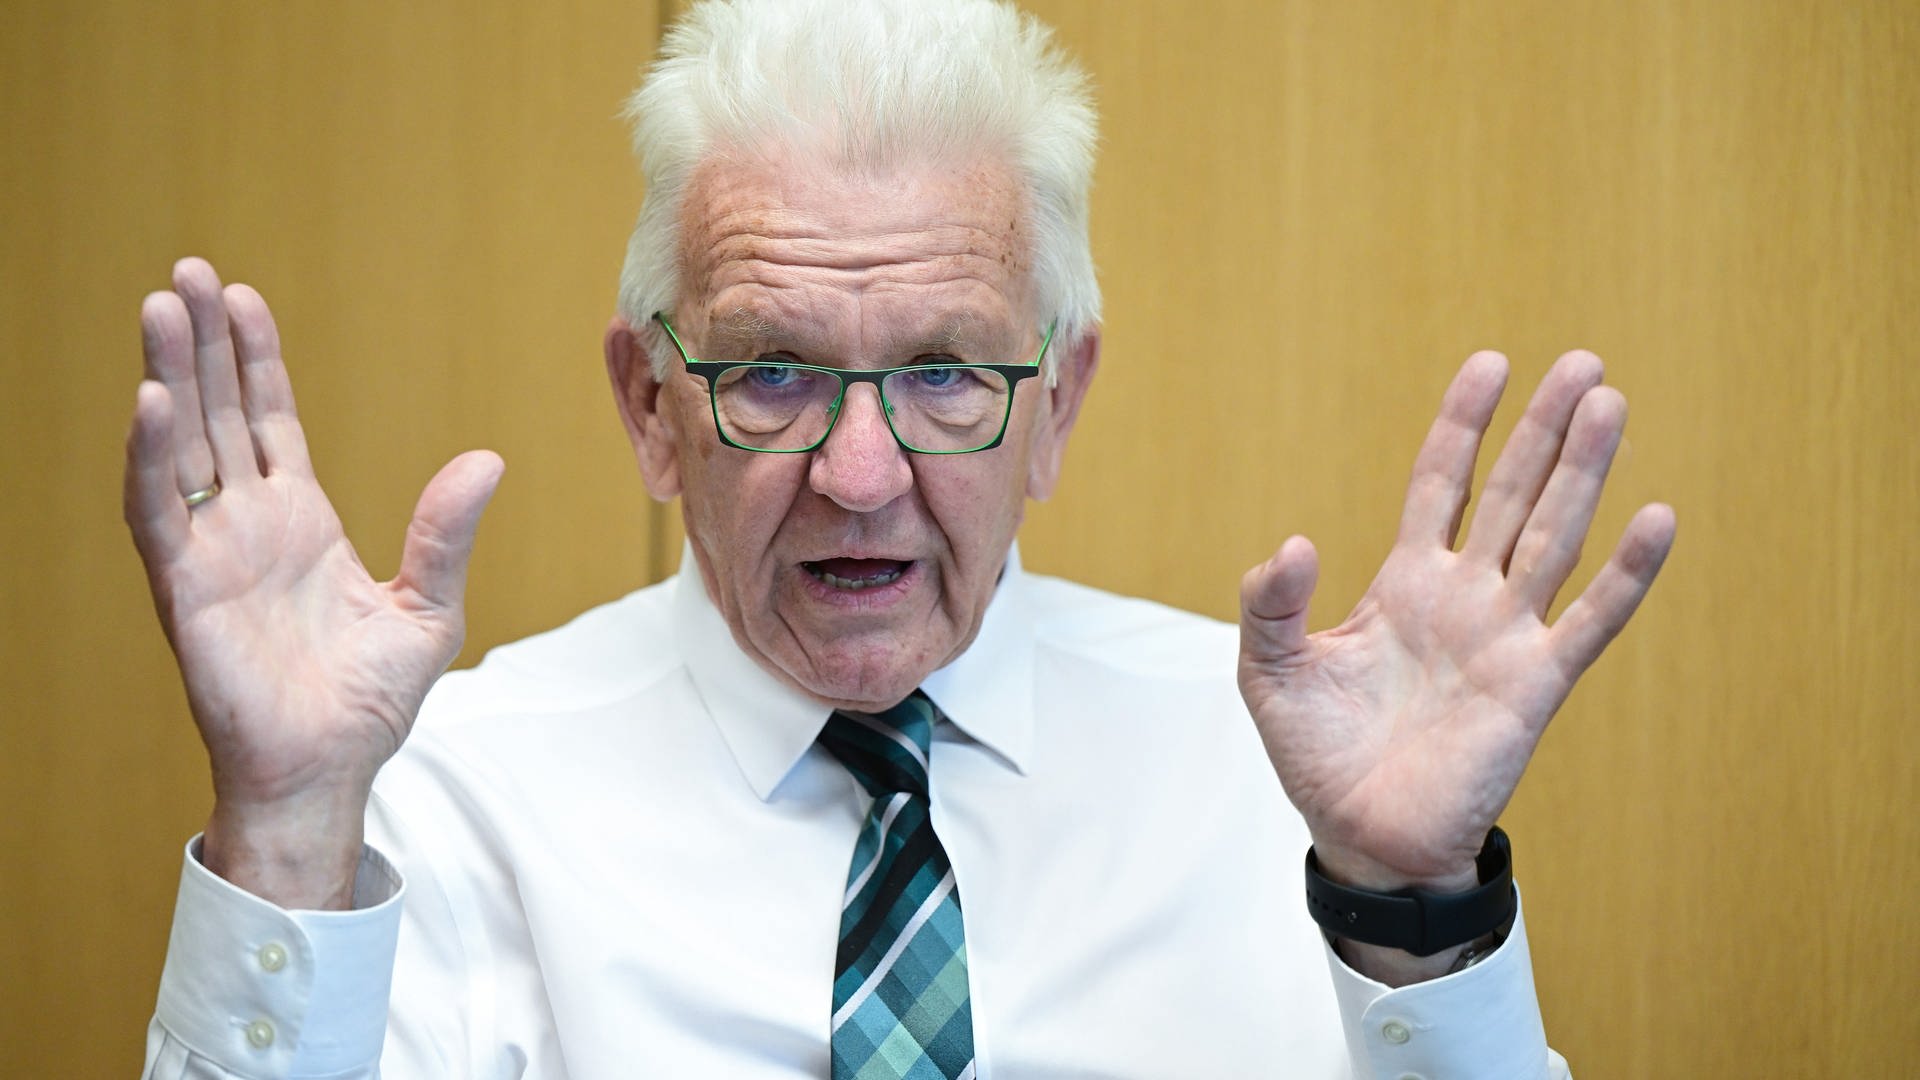 Bundesjugendspiele: Kretschmann findet Debatte über Reform überzogen